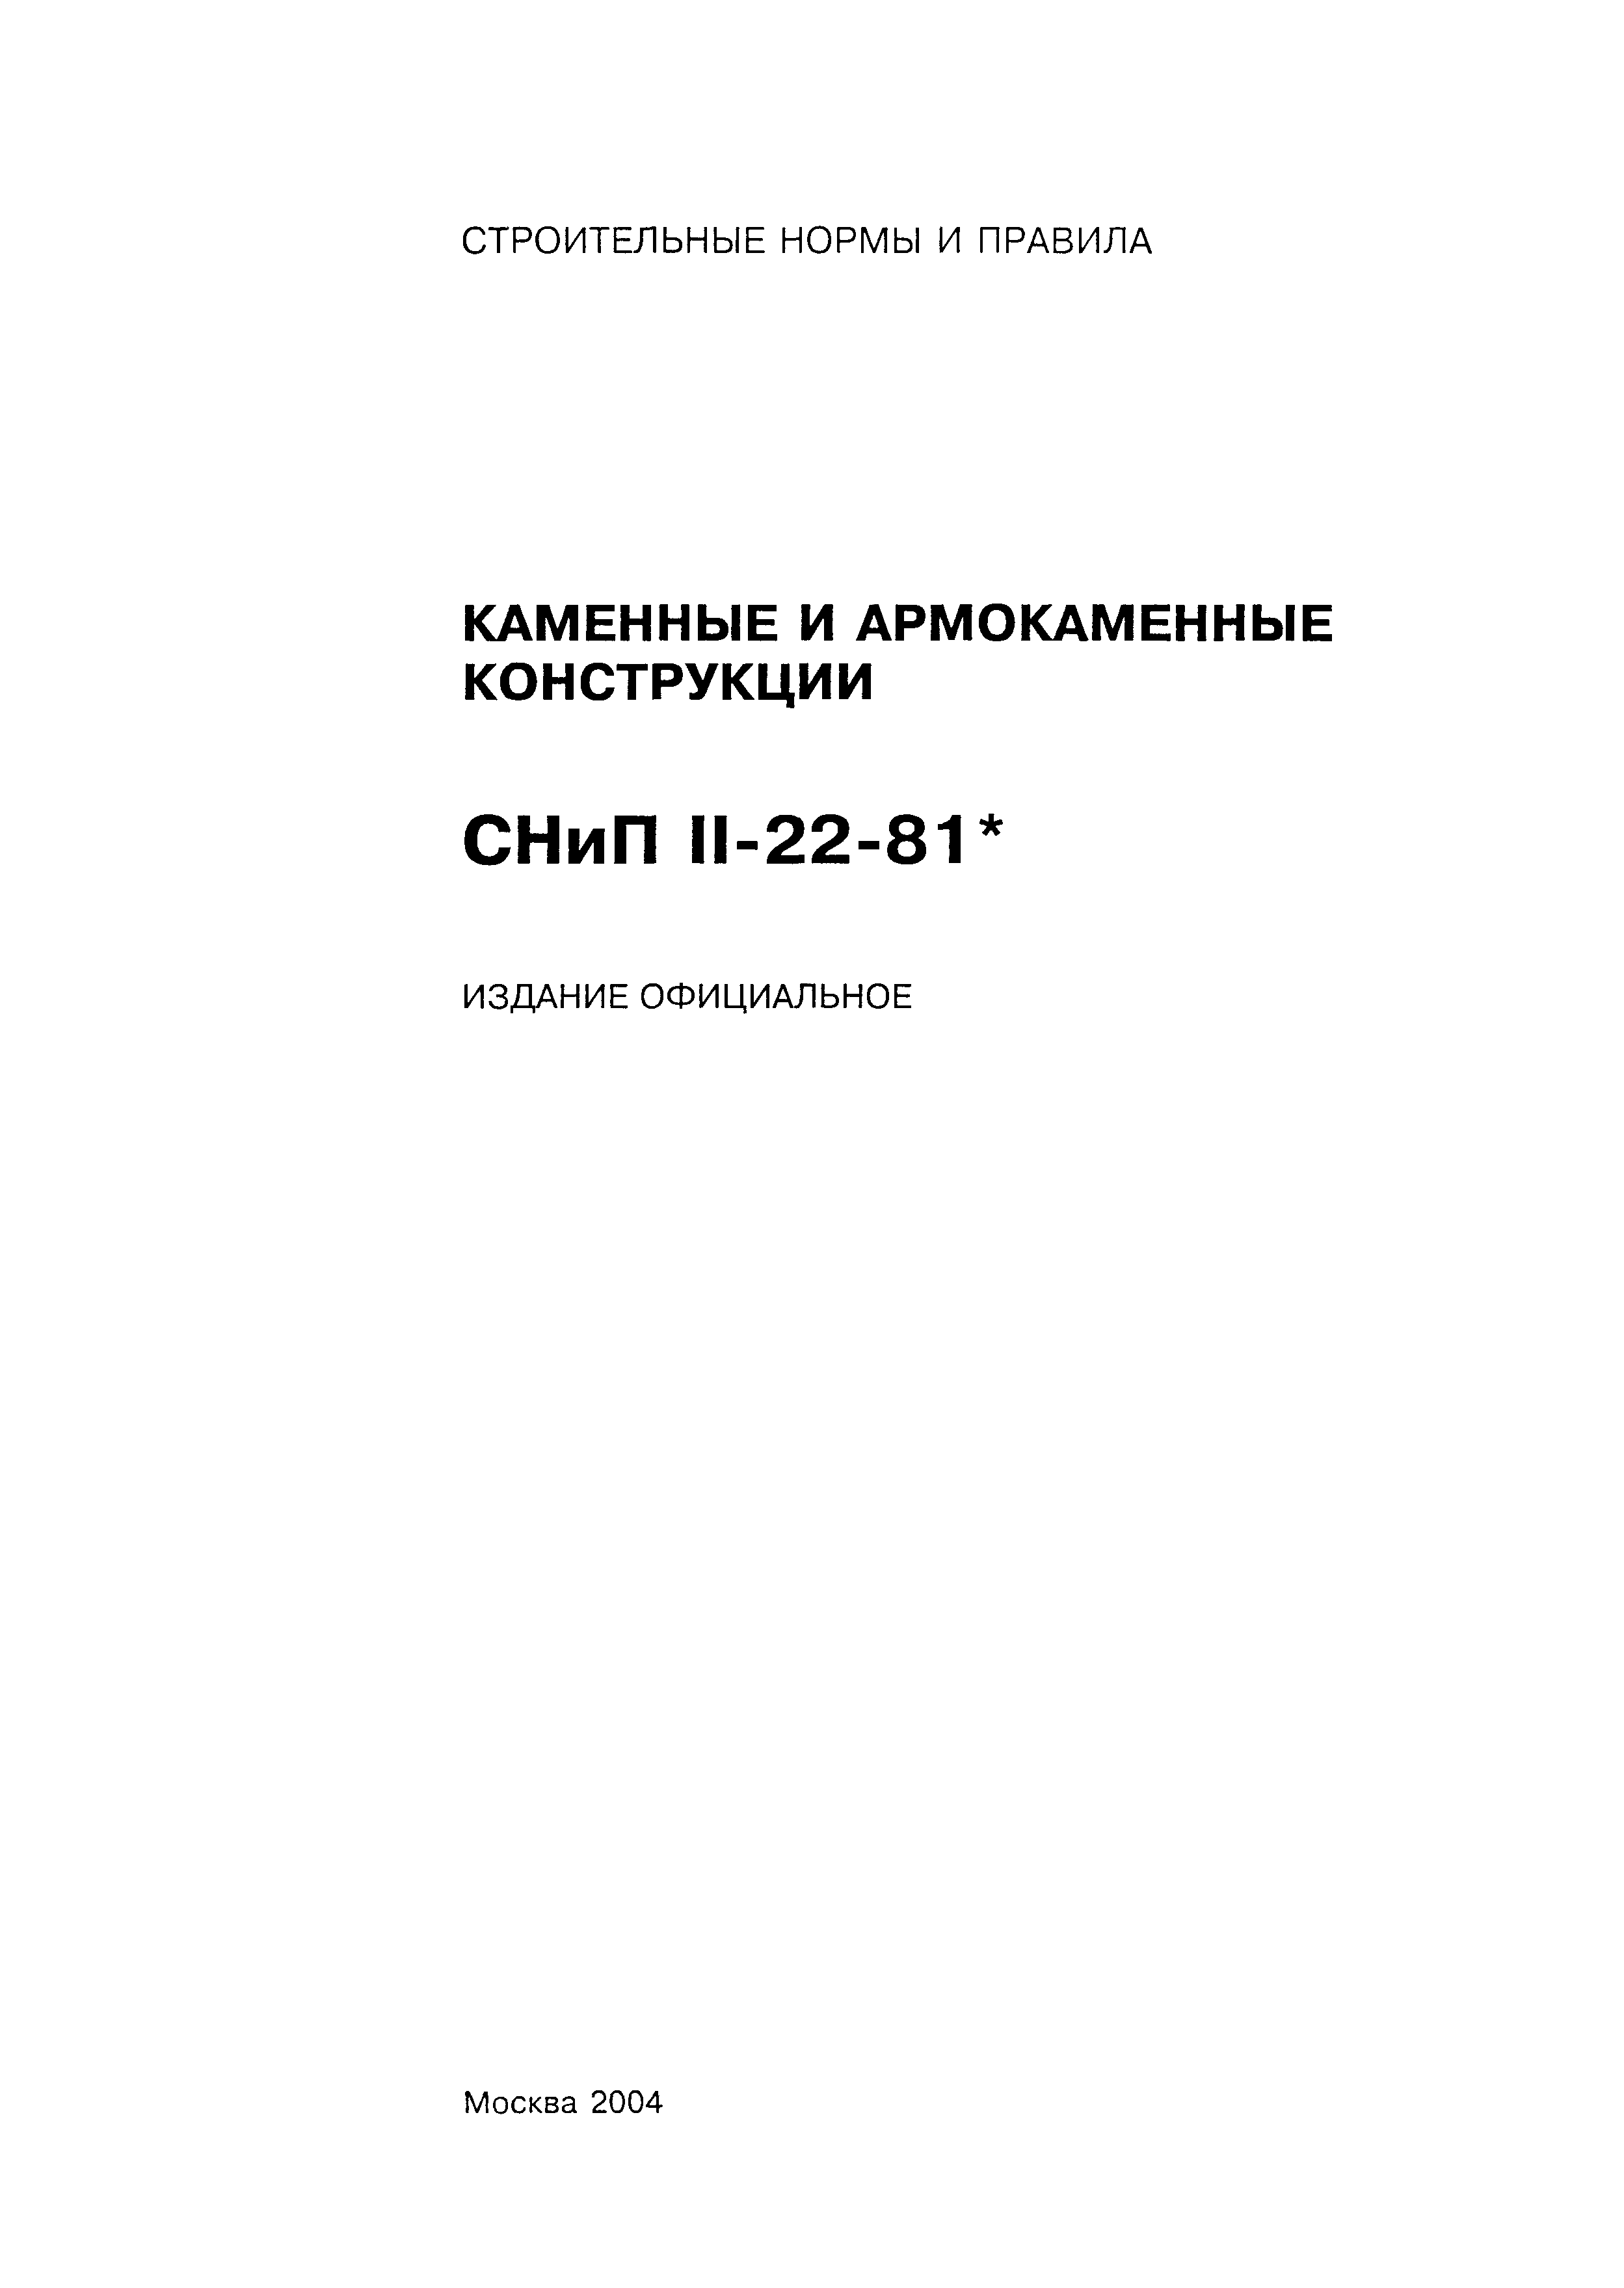 СНиП II-22-81*